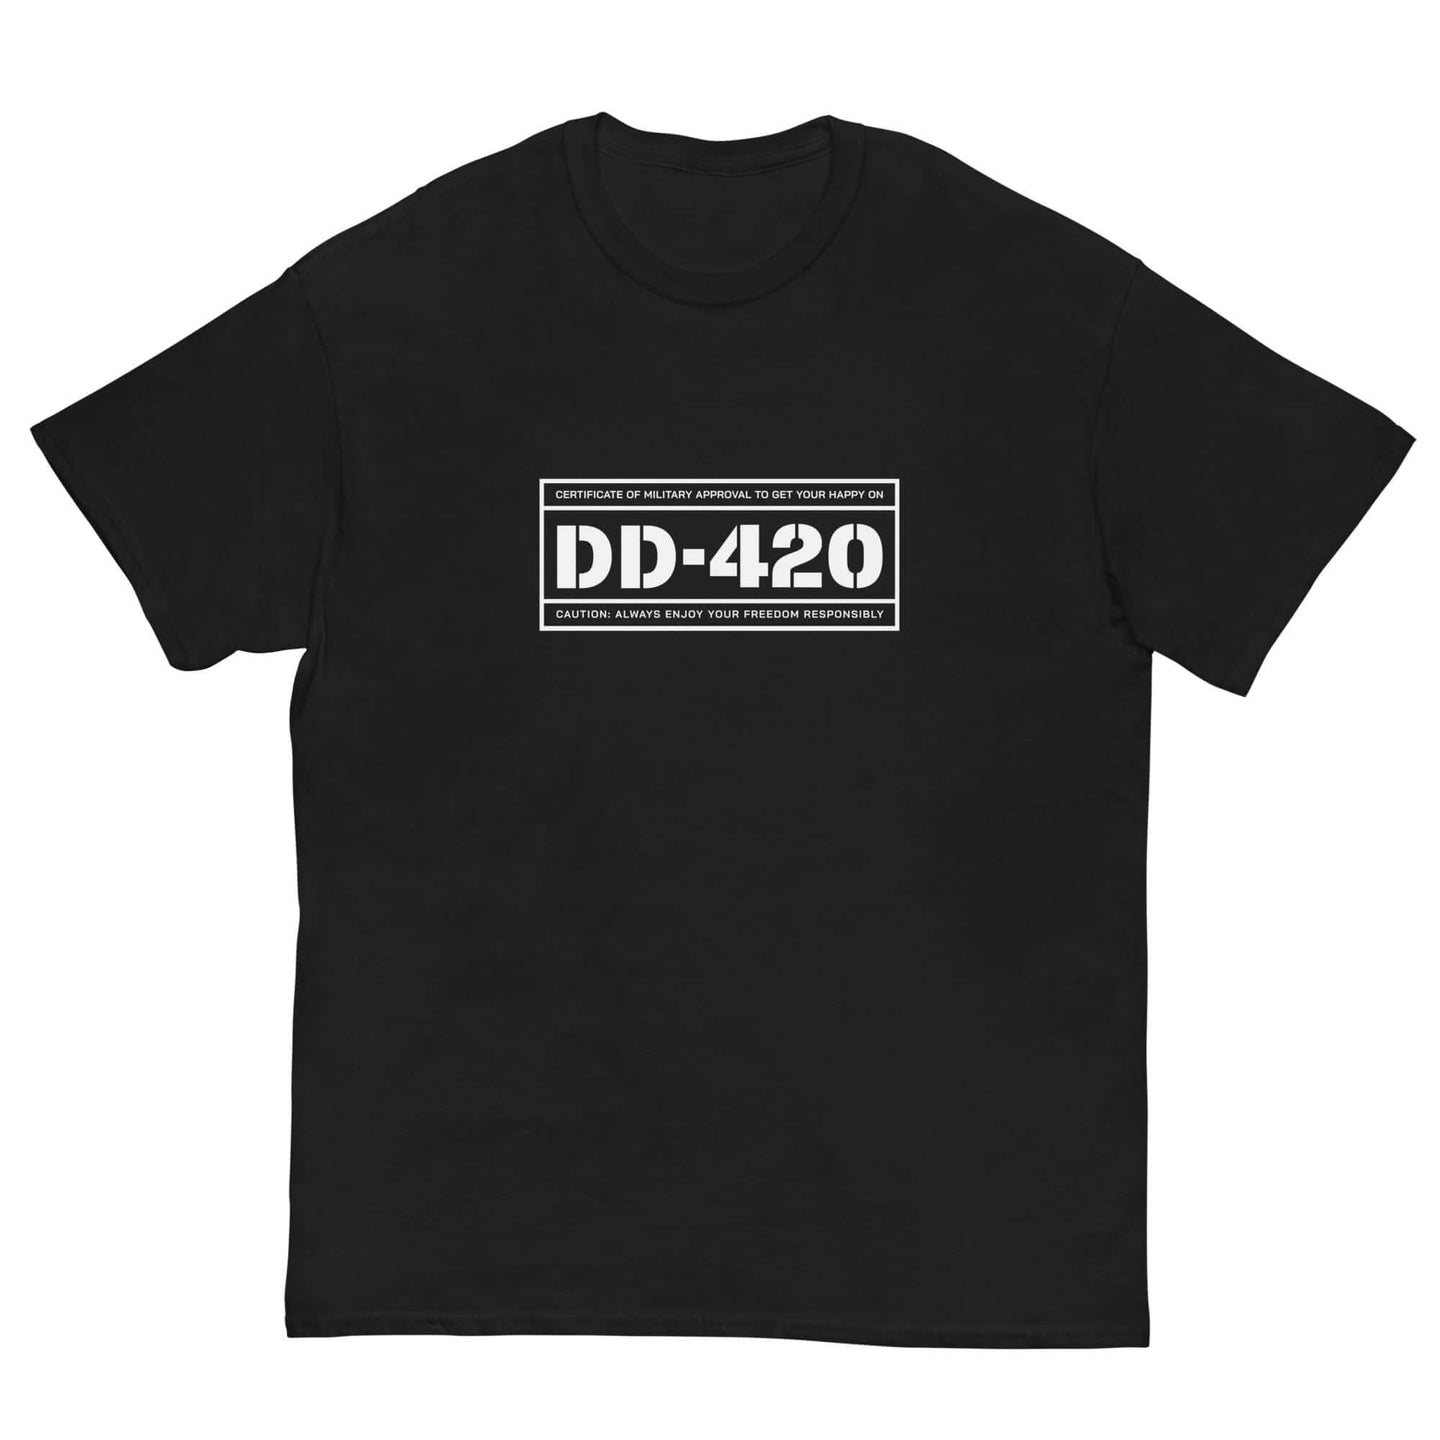 DD-420